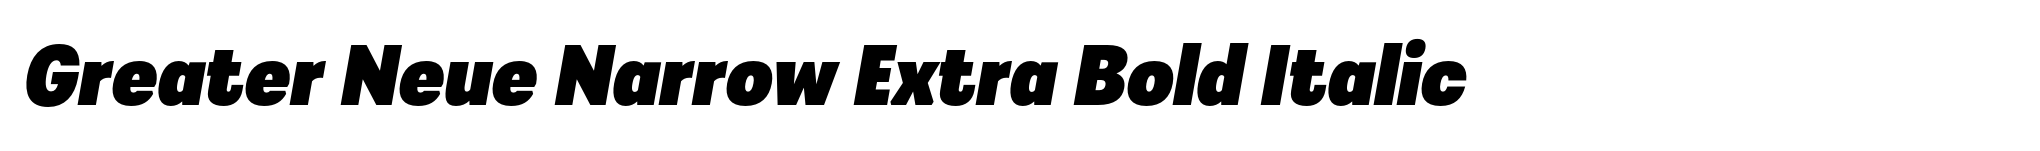 Greater Neue Narrow Extra Bold Italic image